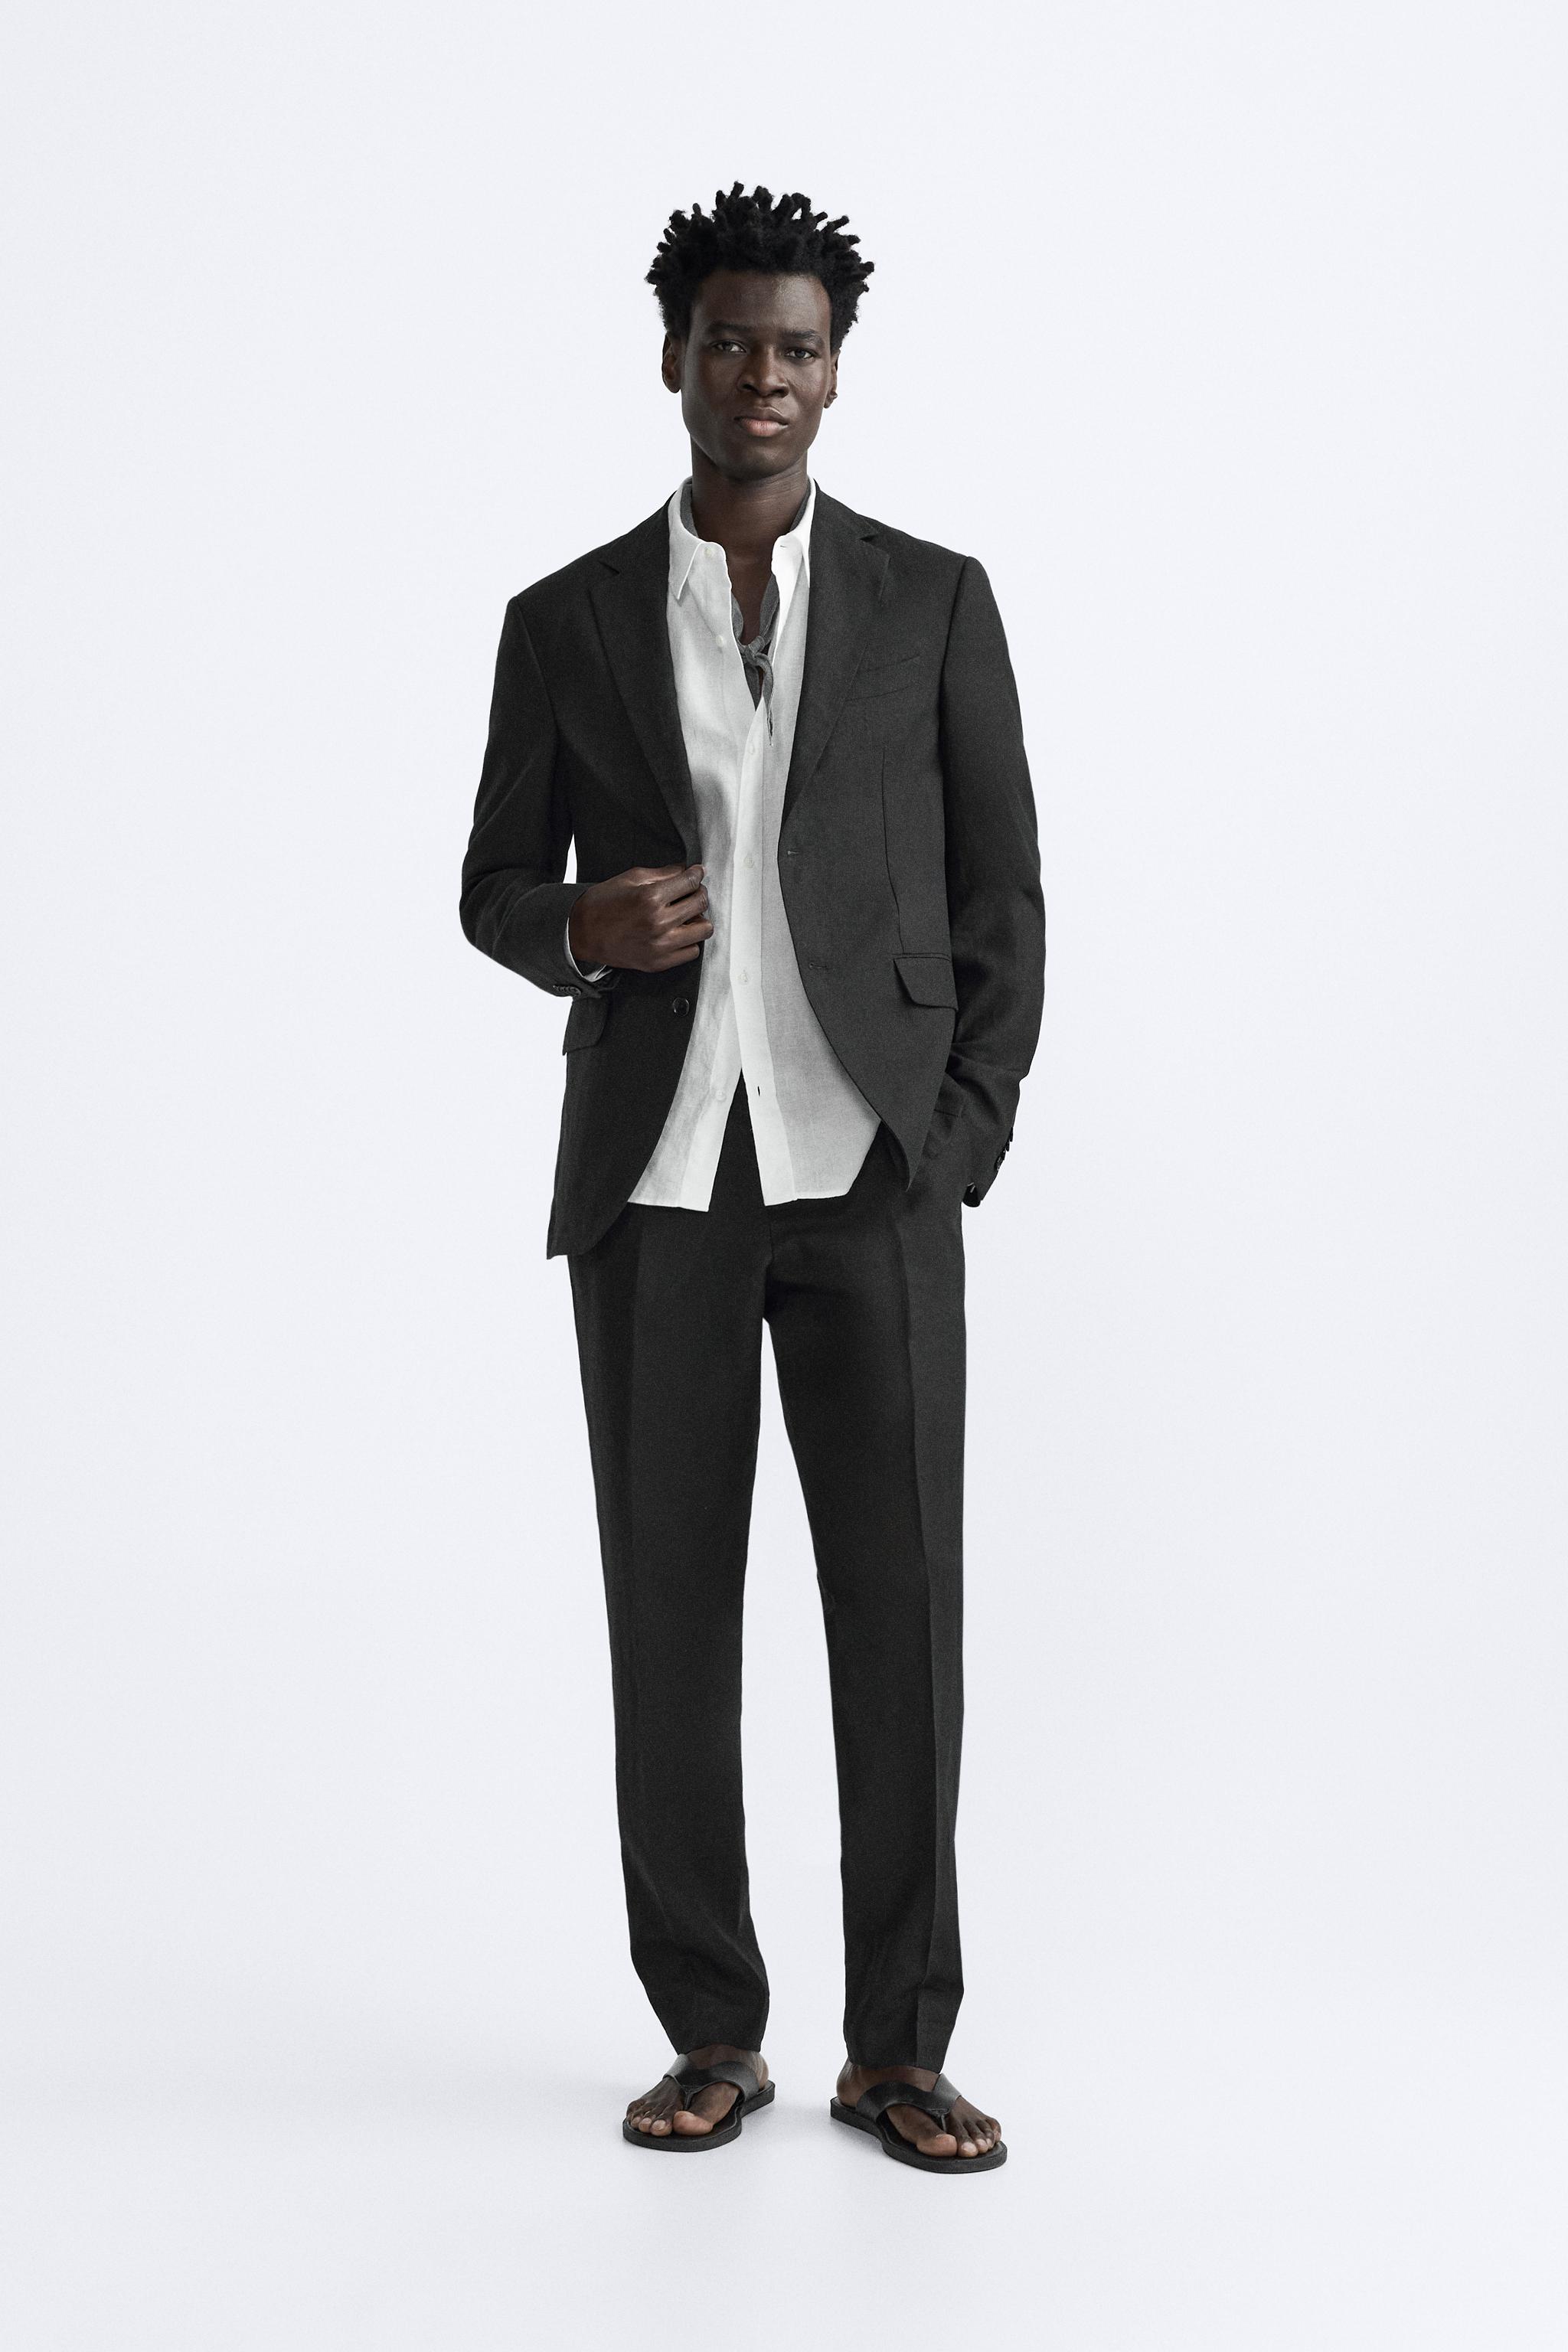 Men's Linen Suit Slim Fit 2 Pieces Beach Wedding Suit Summer Casual Blazer  Pants Set Beige,34/28 at  Men's Clothing store